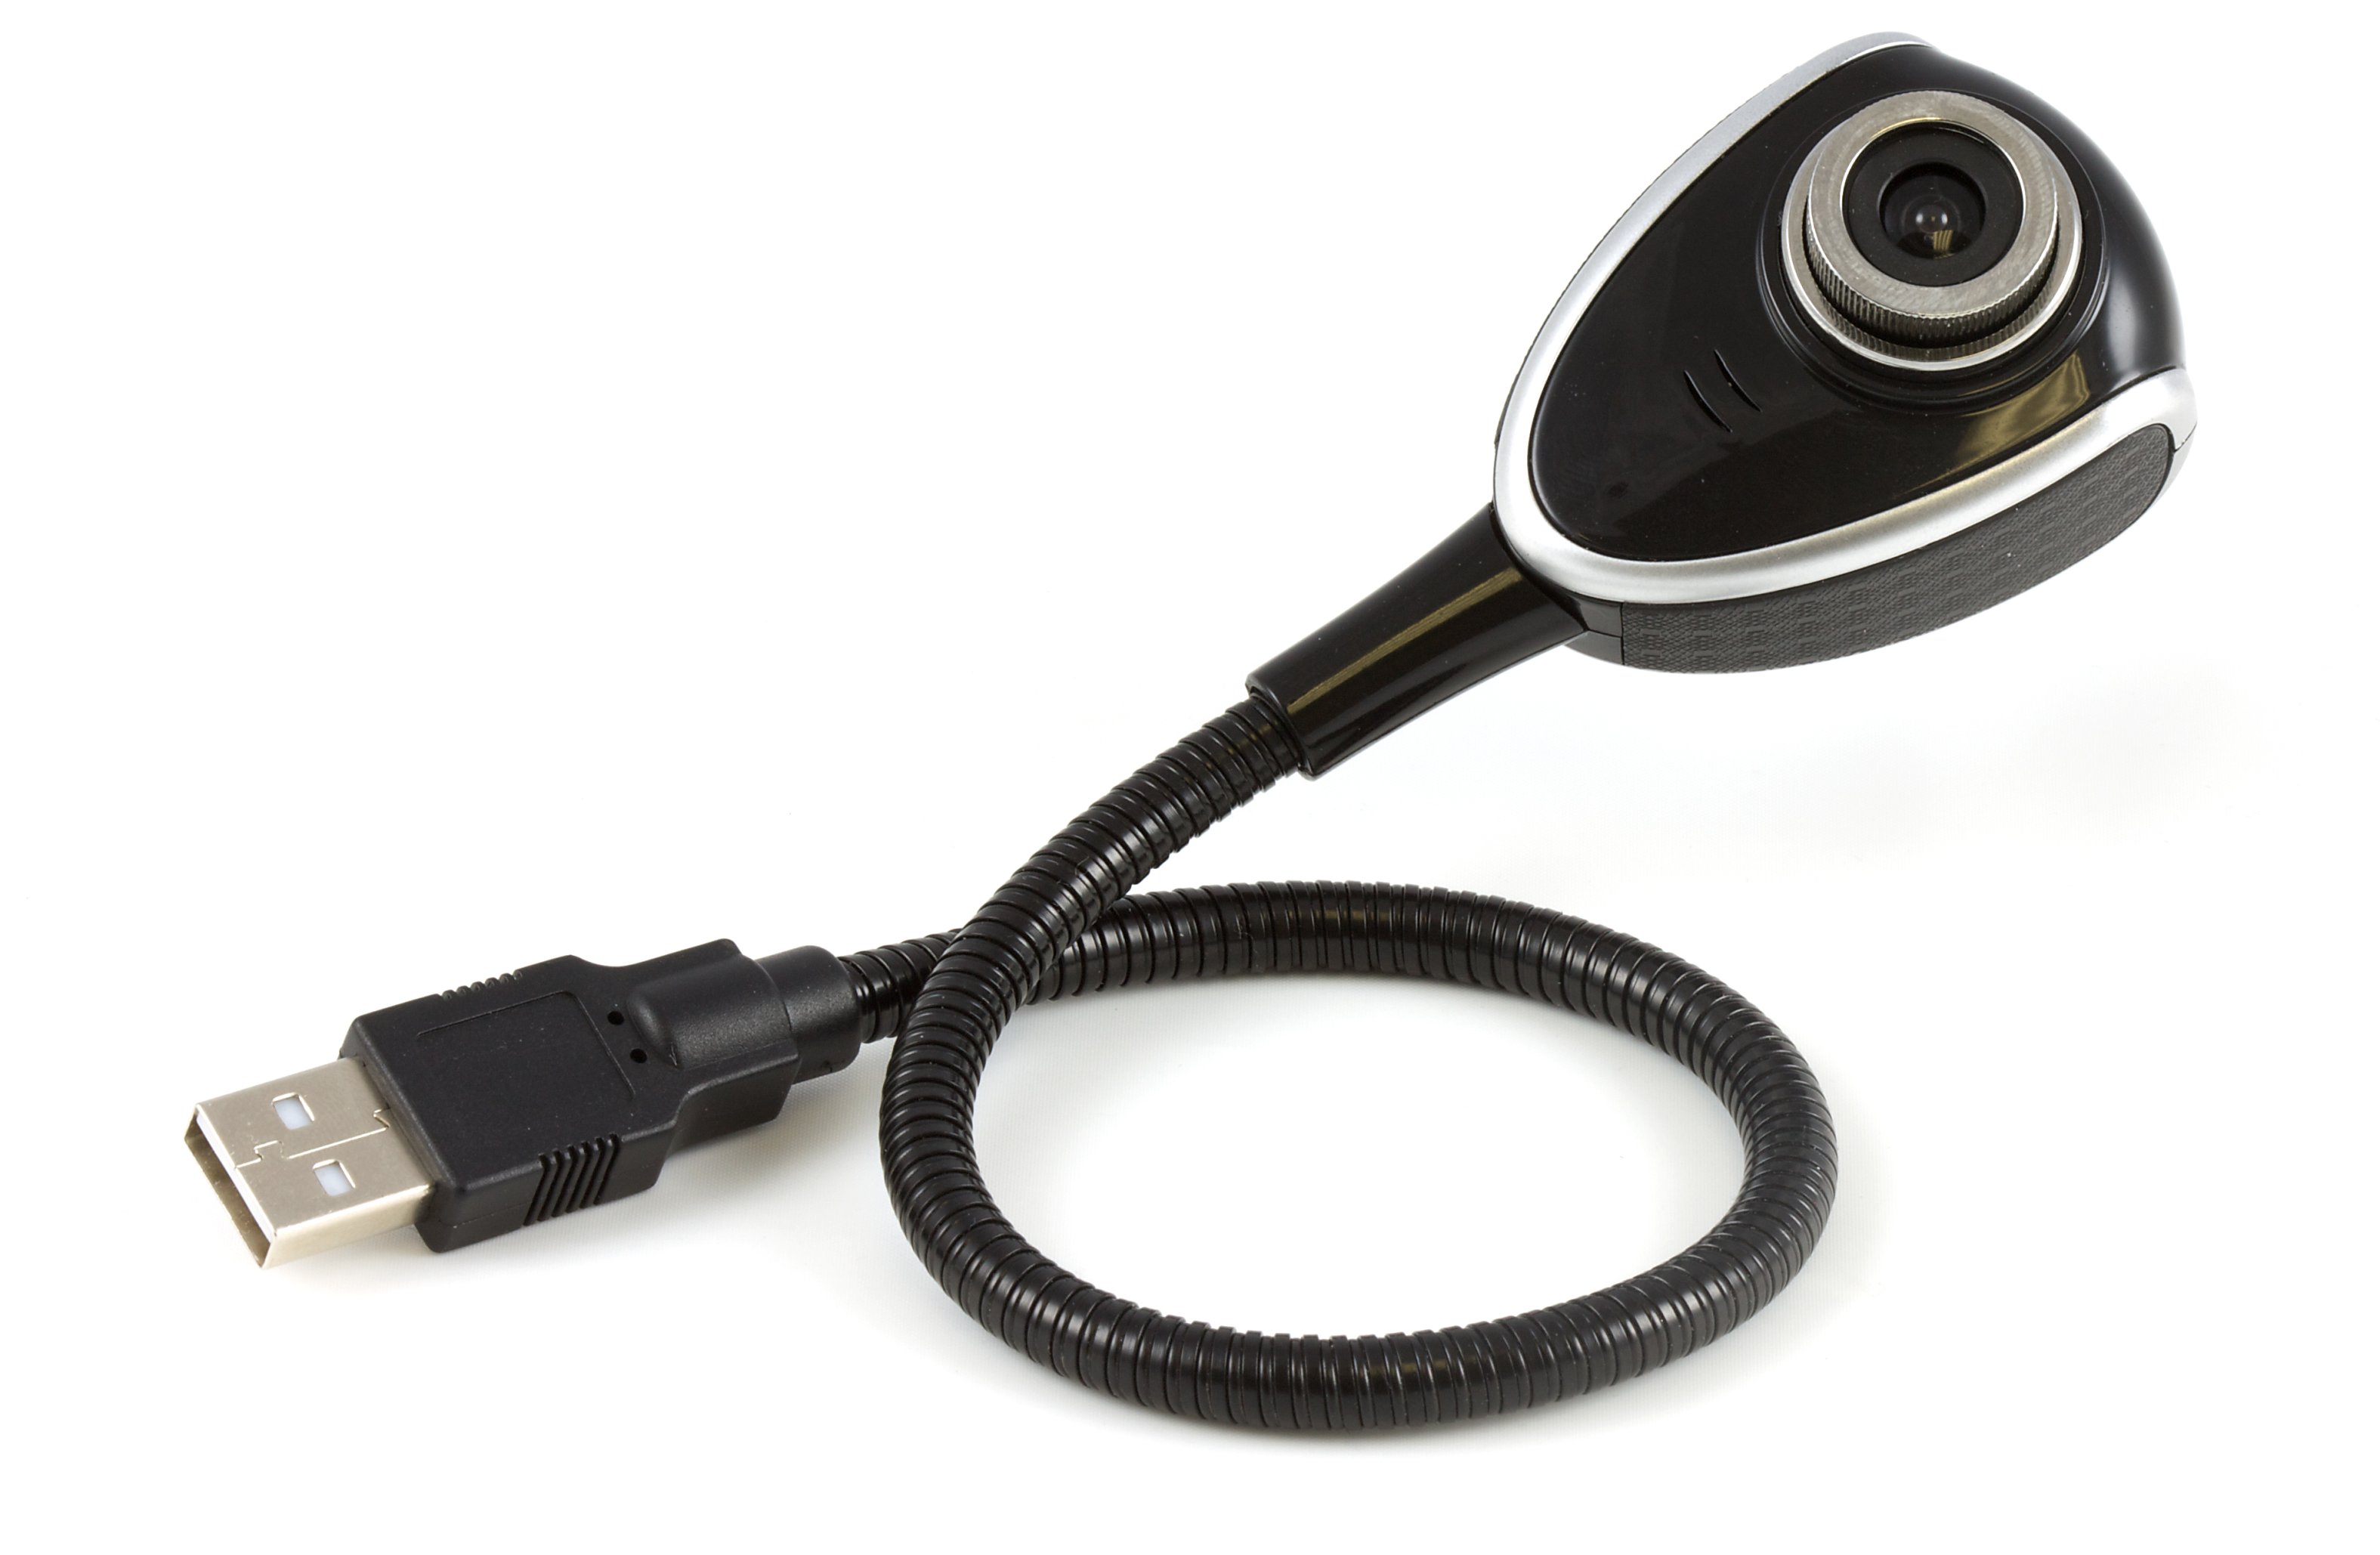 Usb камера для телефона. USB камера uvc84. Zet USB webcam камера. USB web cam от Serenegiant..